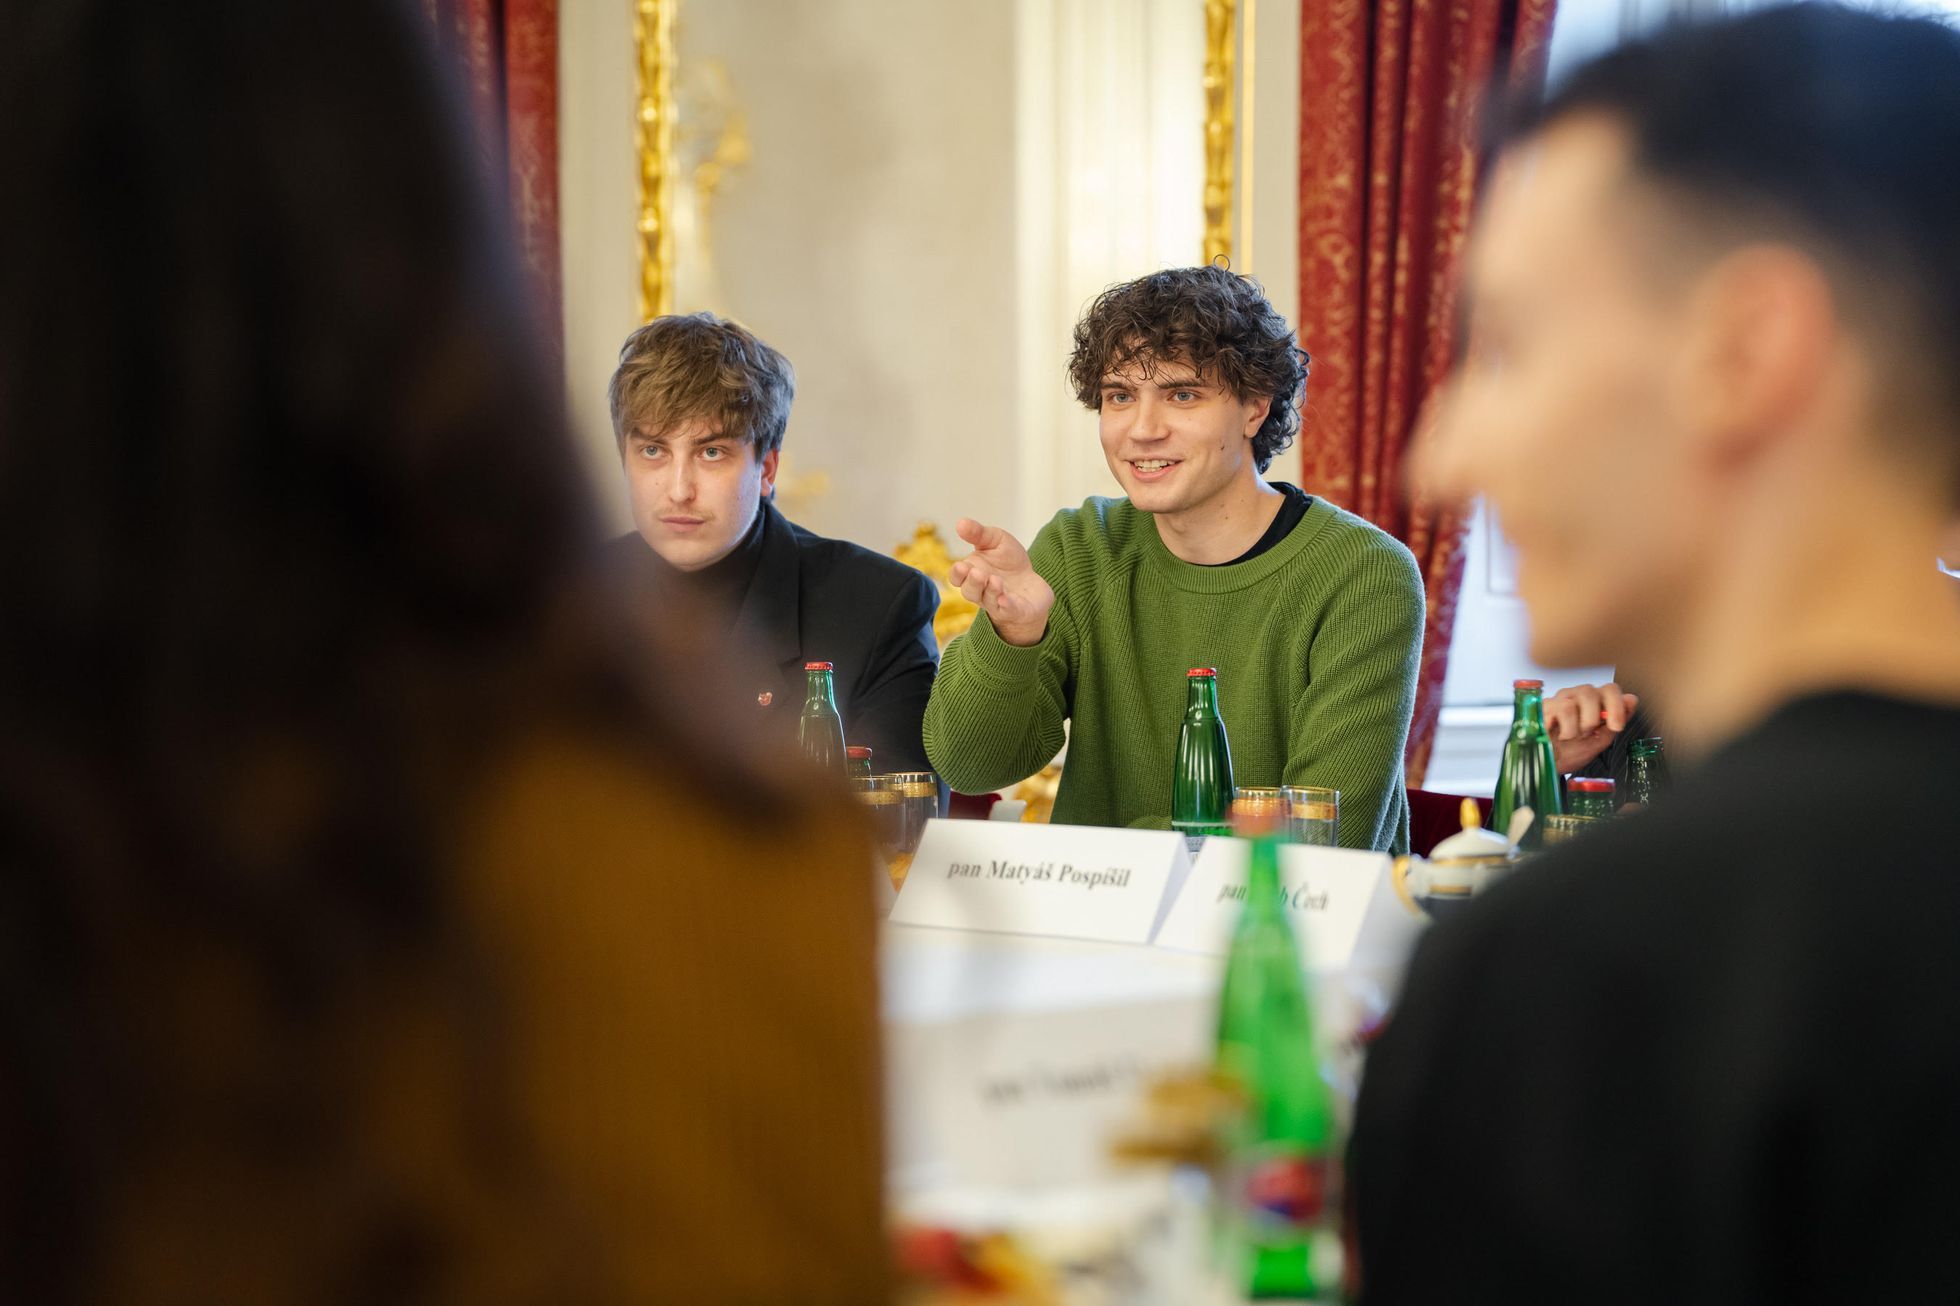 Šimon Šebek při setkání mladých lidí s prezidentem Petrem Pavlem letos v lednu, kdy plánovali spolupráci.